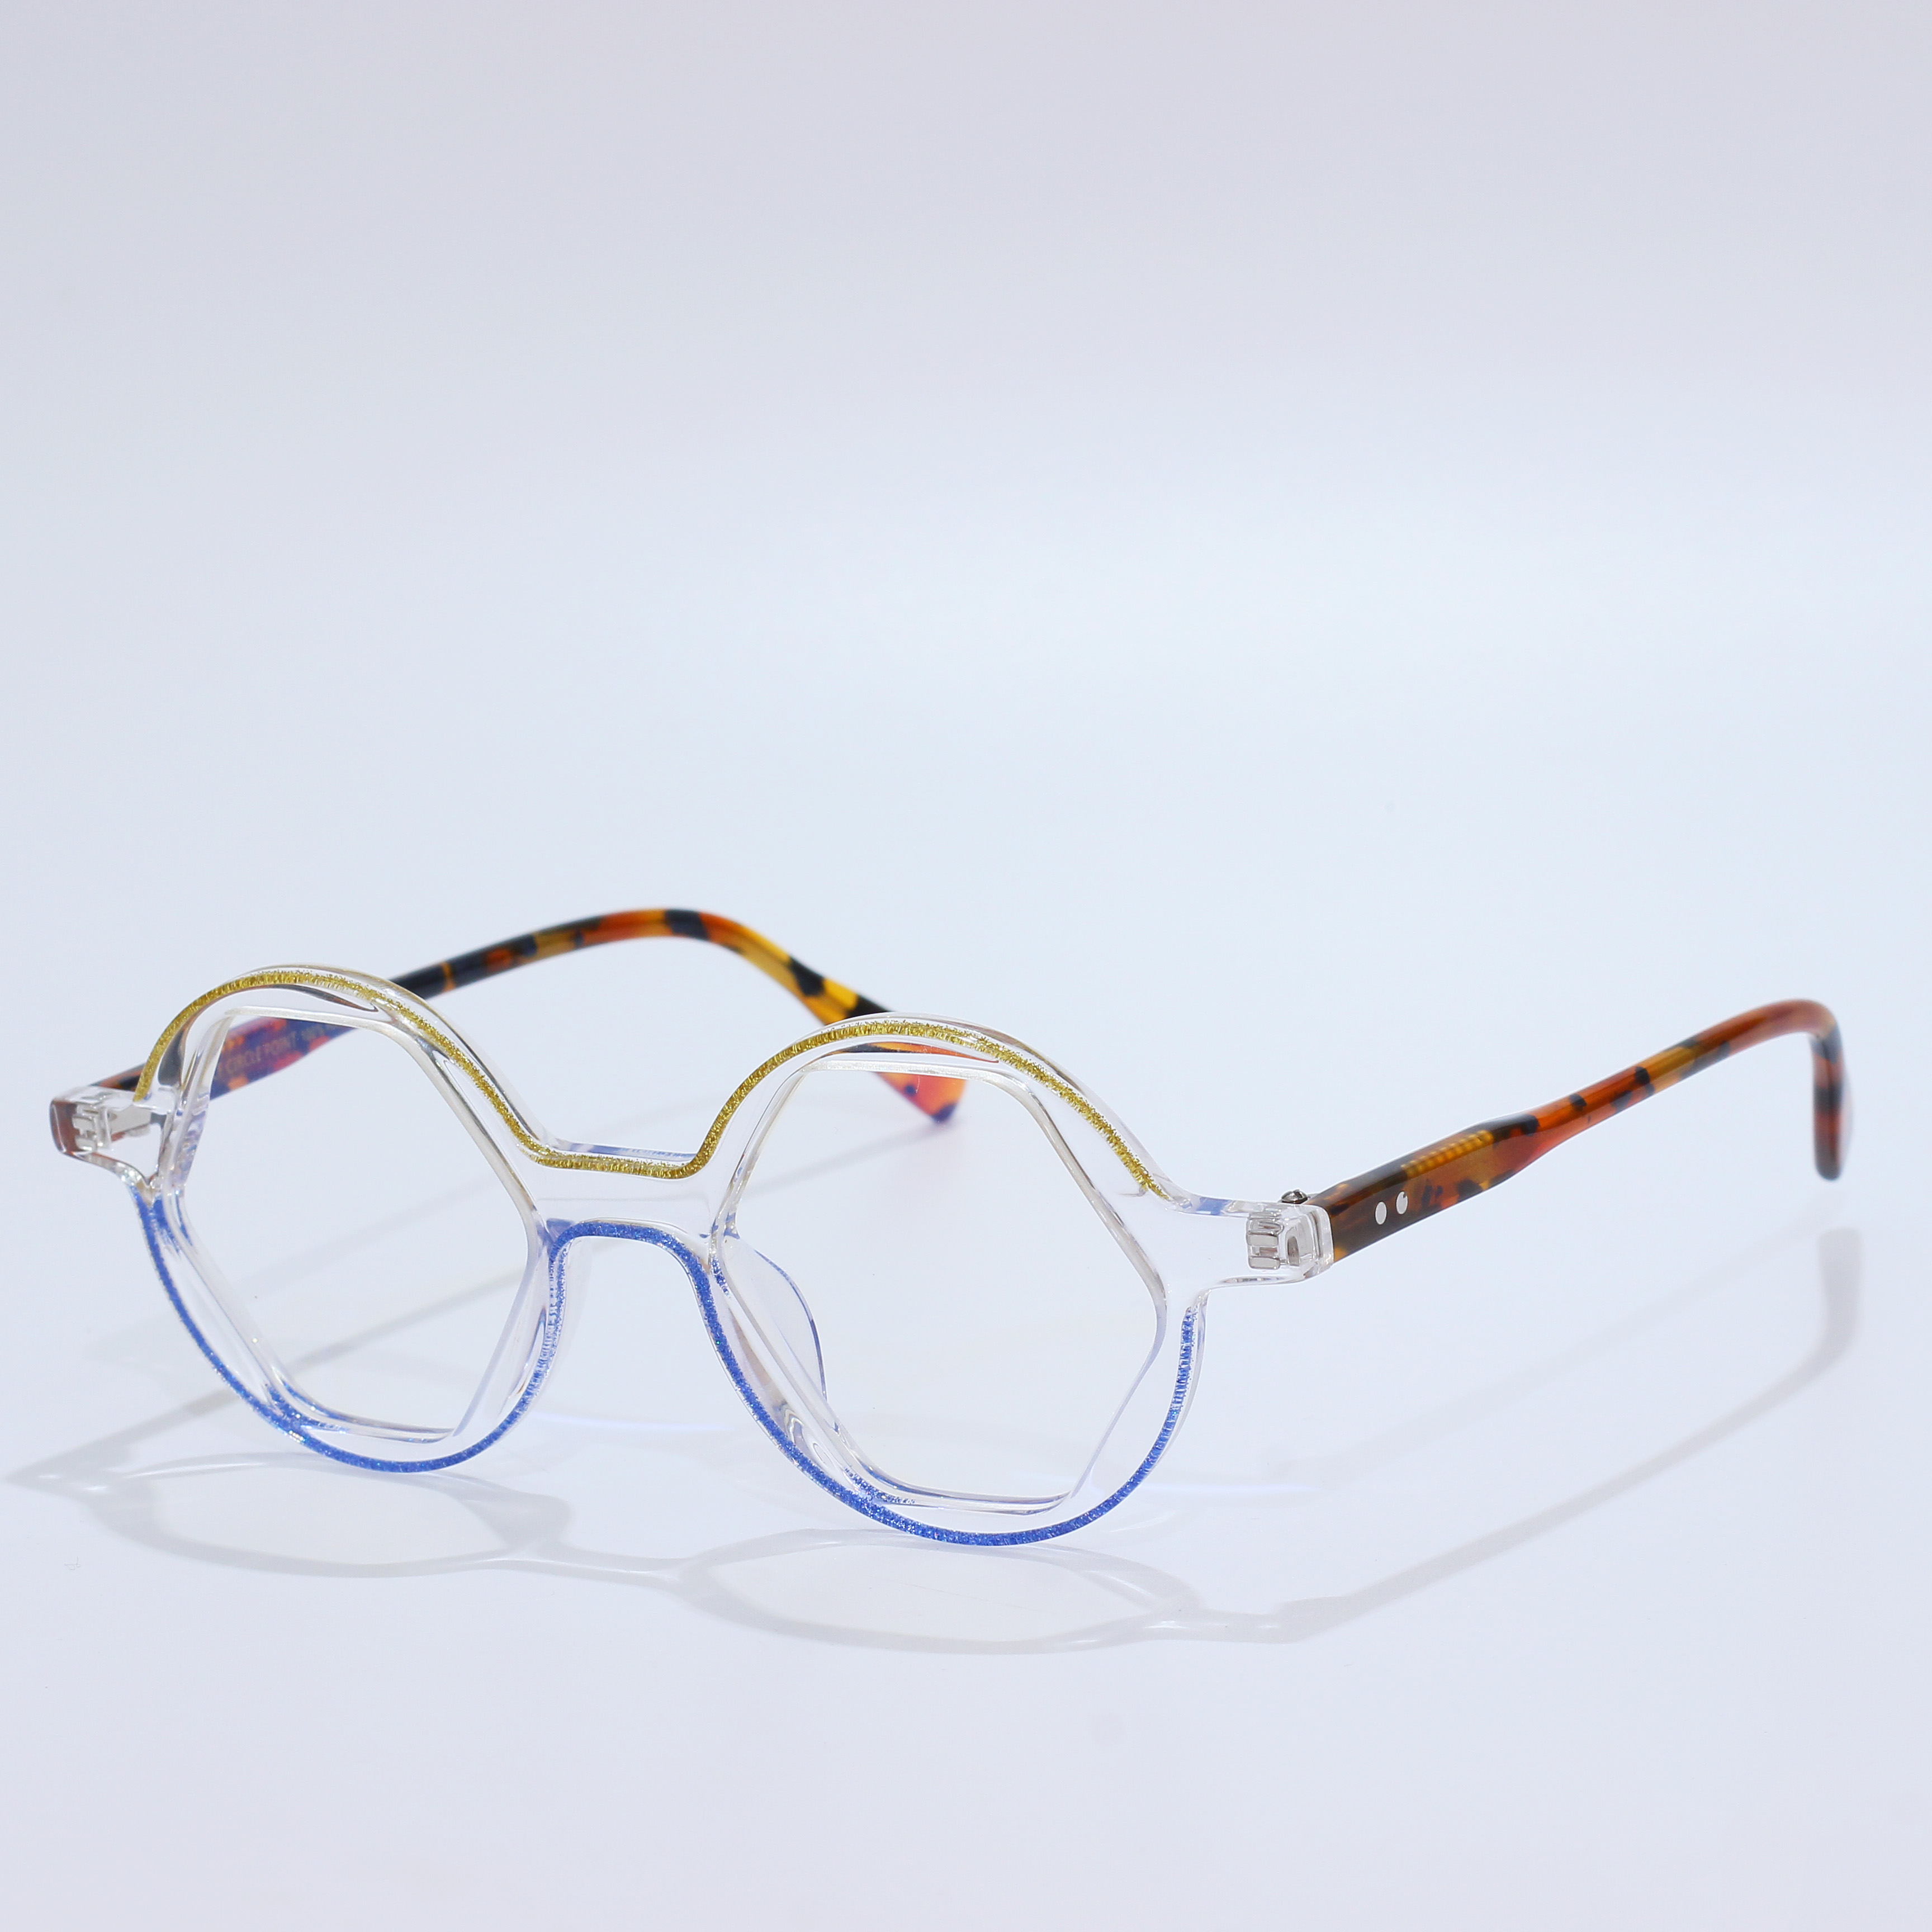 Acetate Mazzucchelli Blue Light Glasses Eyeglasses Frame (3)